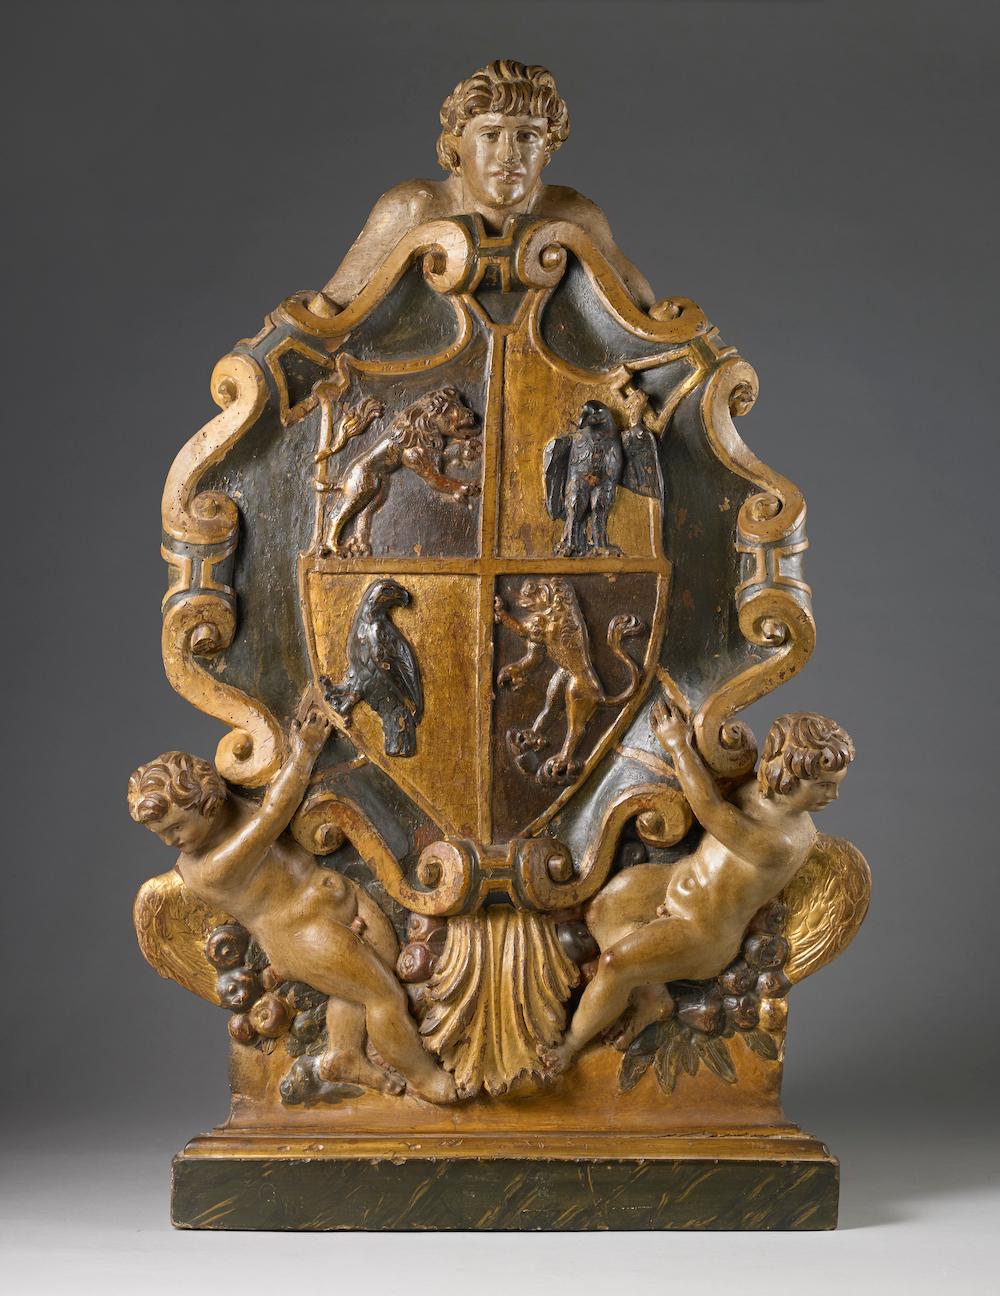 Artiste actif en Italie du Nord, XVIIe siècle 

Armoiries héraldiques : Écu écartelé au premier et au quatrième en noir avec un lion rampant,
 aux deuxième et troisième aigles d'or


Noyer sculpté, polychrome et doré, 88 x 55,5 x 4,5 cm


Armoiries